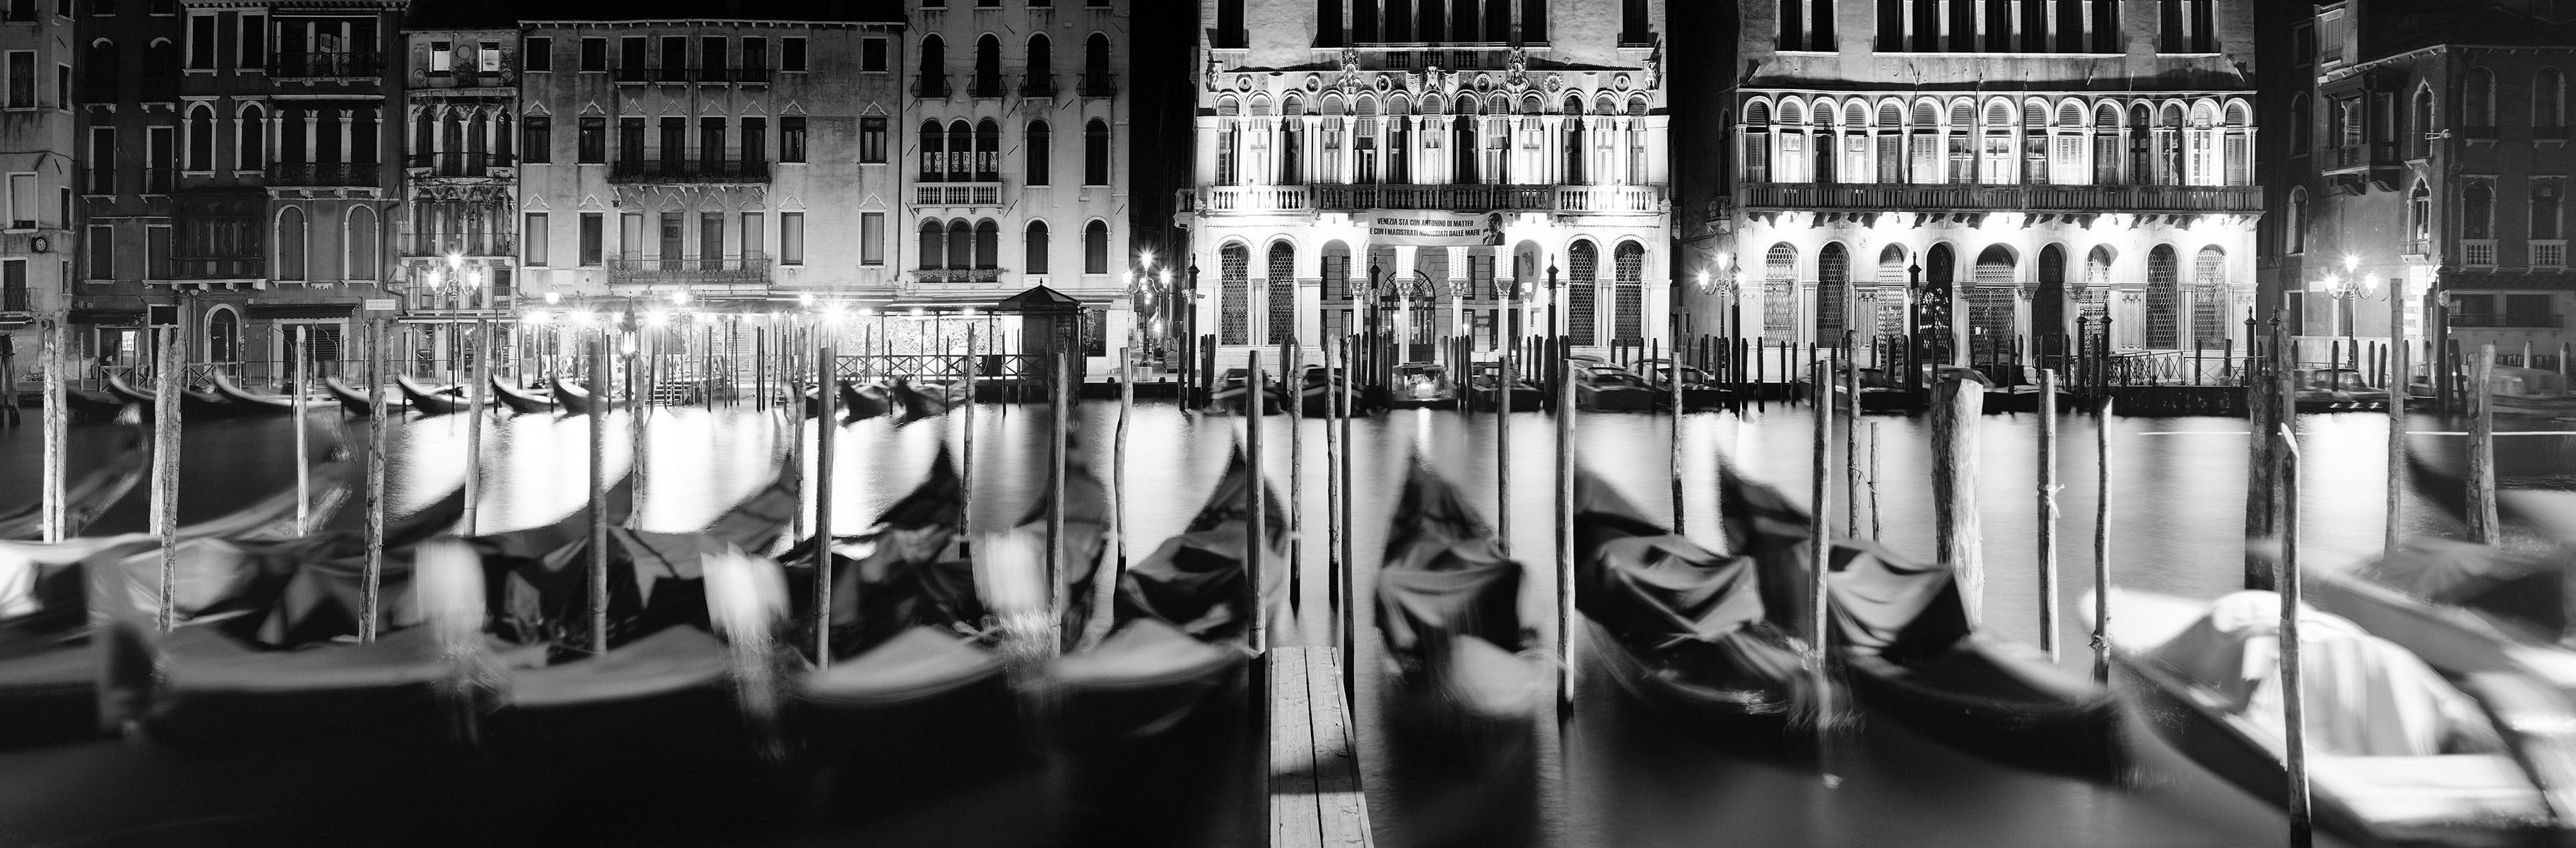 Étude de nuit Gondola n°1, Venise, photographies d'art en noir et blanc, paysage